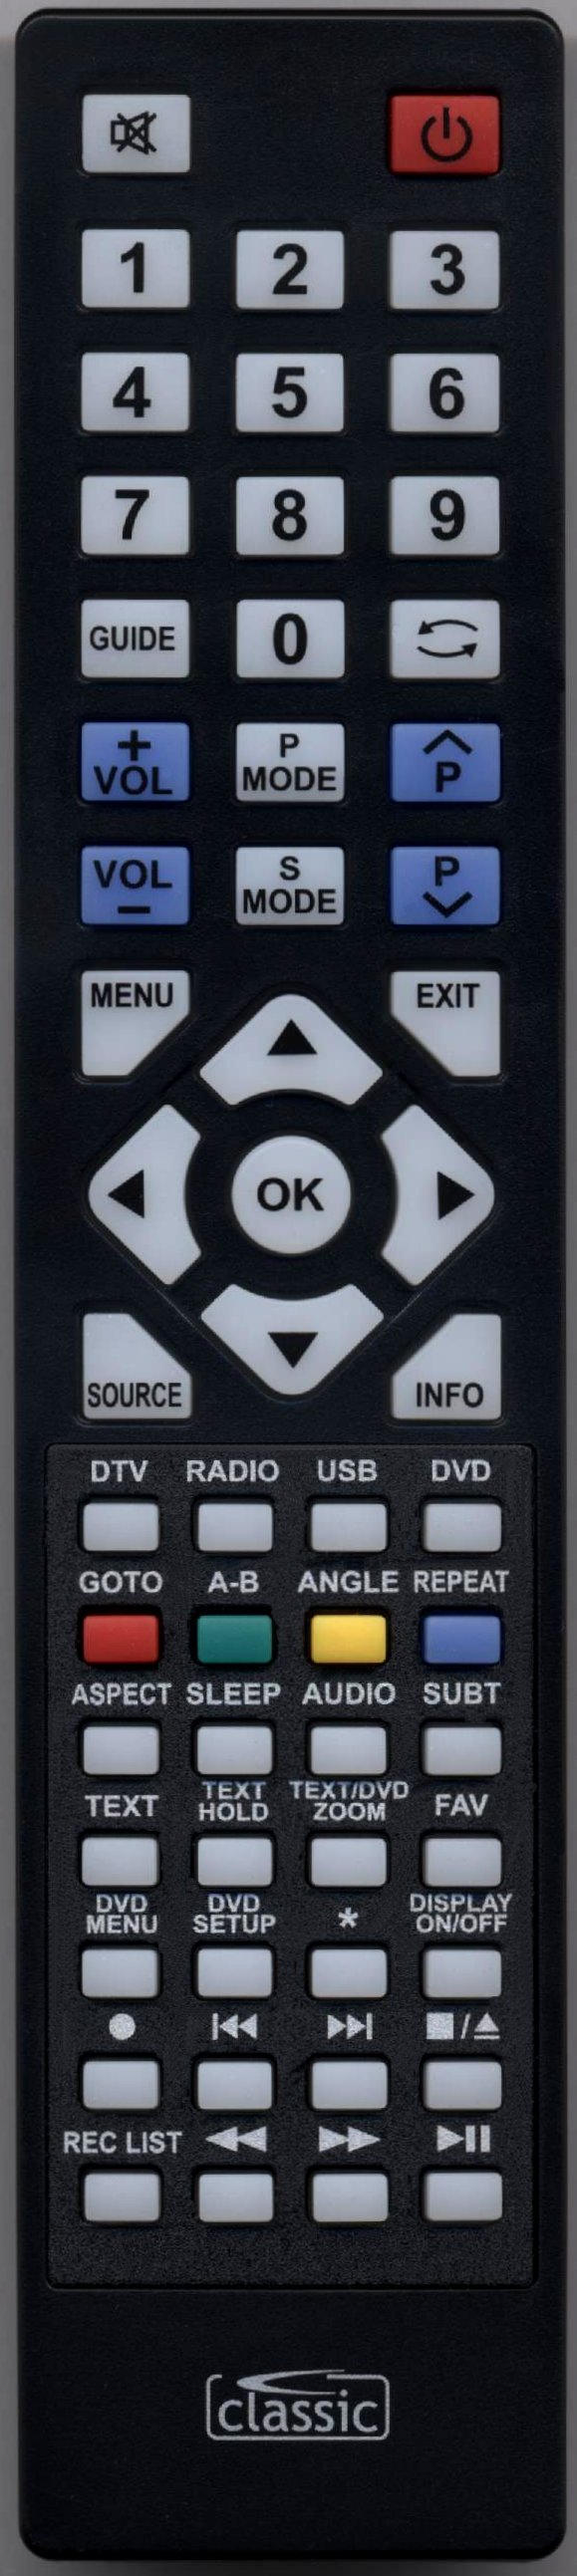 TECHNIKA 24E21W-FHD/DVD Remote Control Alternative